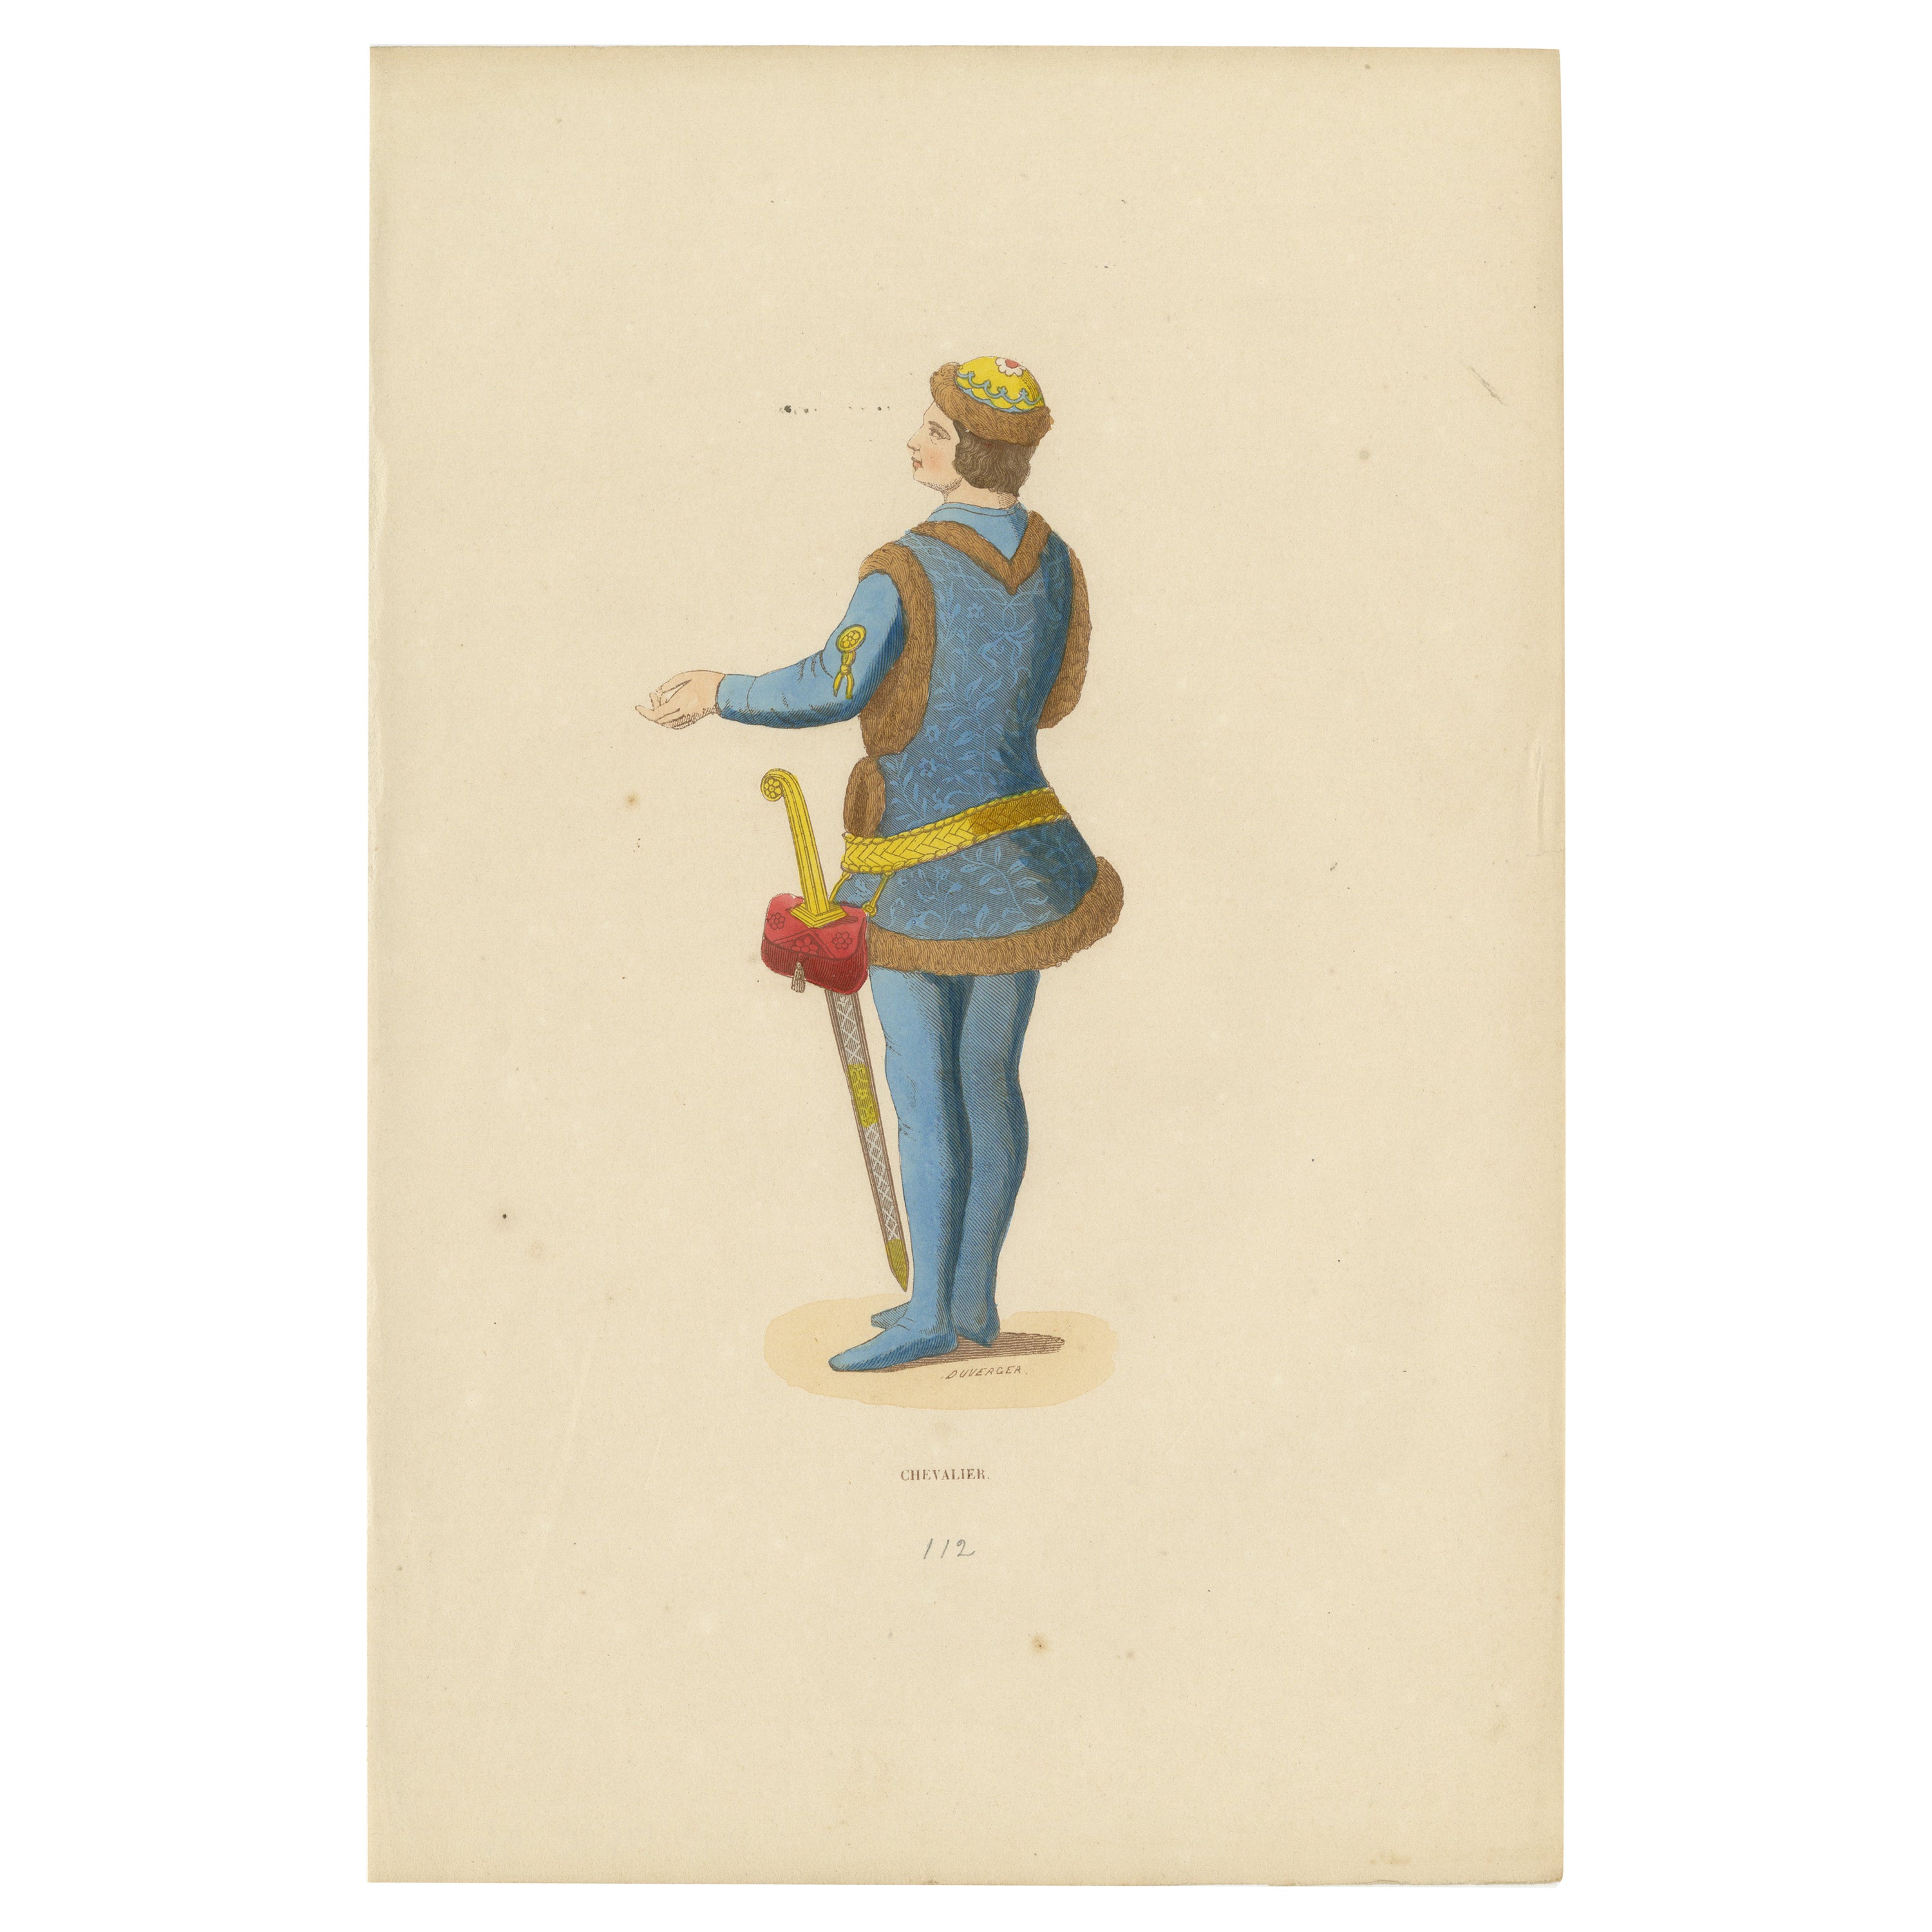 Chevalier médiéval : héraldique et valeur en garbe du 15e siècle, 1847